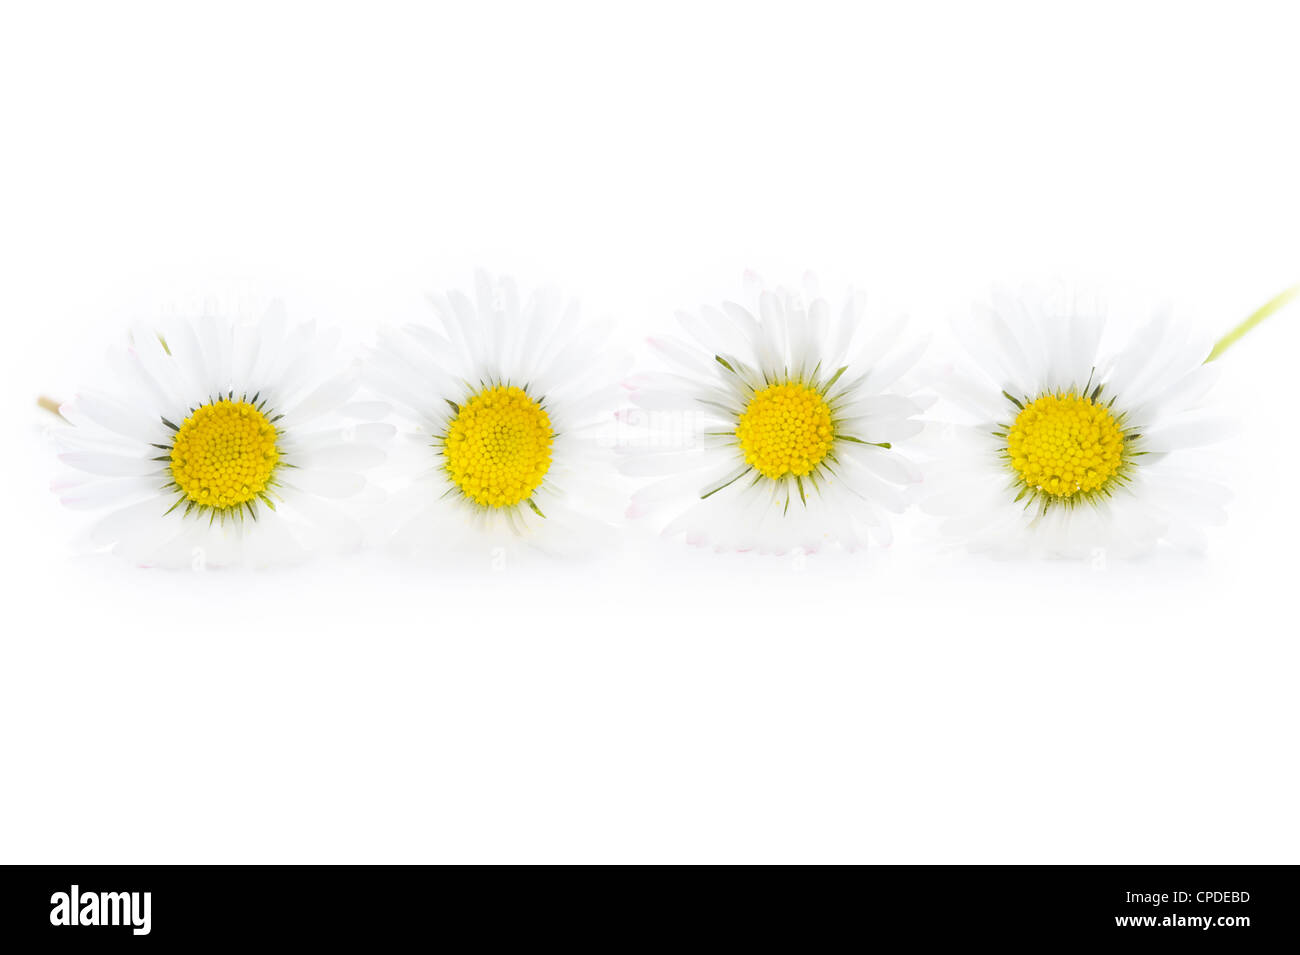 vier gemeinsame englischen Rasen Gänseblümchen isoliert auf weißem Hintergrund Stockfoto